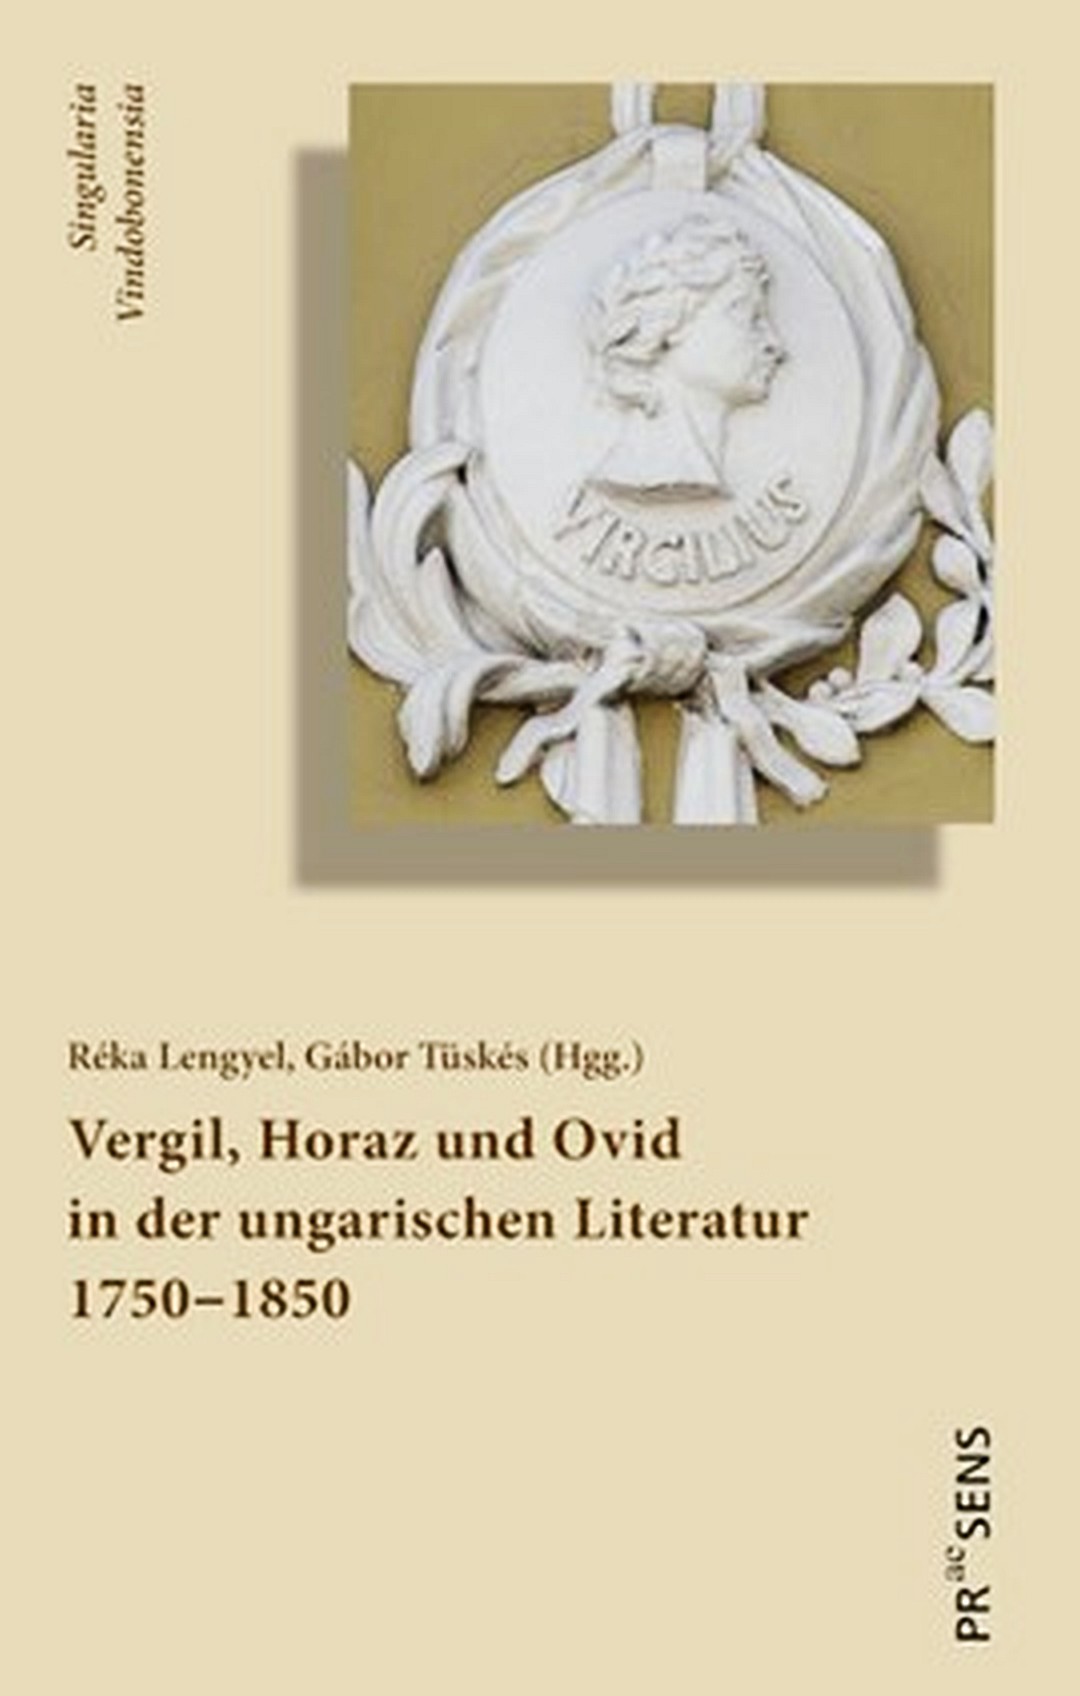 Vergilius, Horatius és Ovidius a magyar irodalomban – angol és német nyelvű tanulmánykötet a 18–19. századi recepcióról